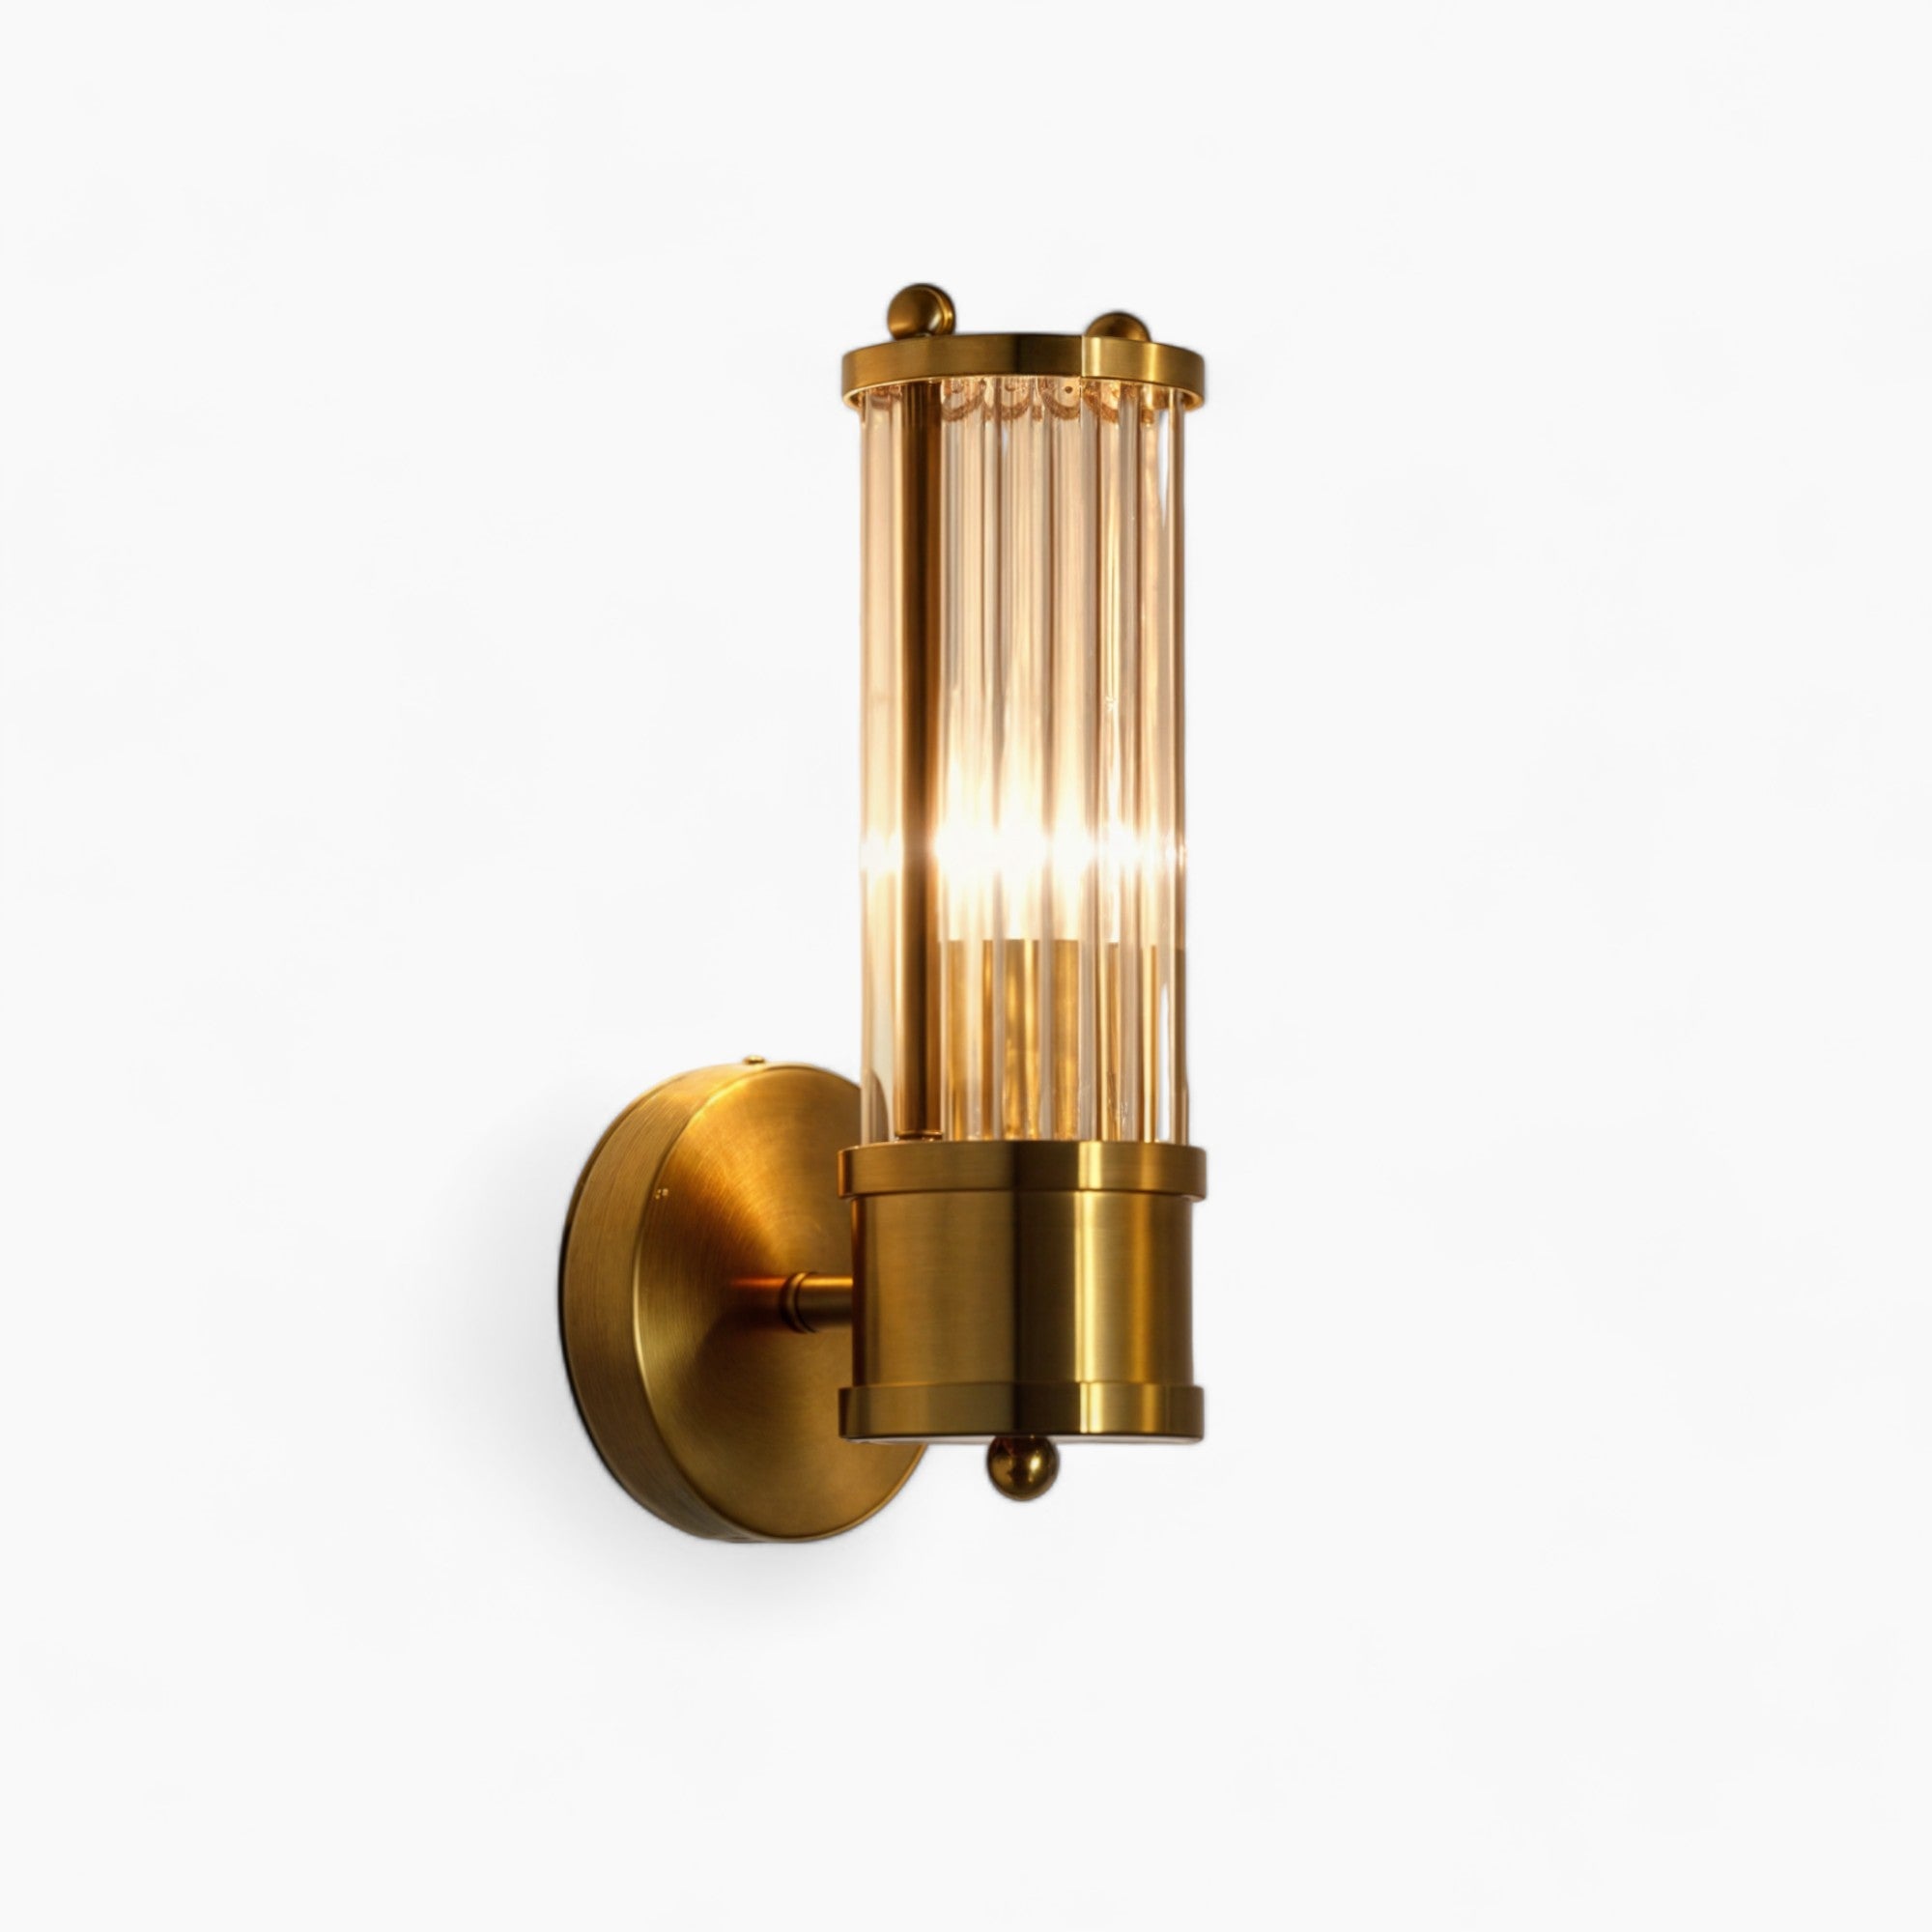 Luxus Gold Badezimmer Eitelkeit Wandleuchten Kristall Kupfer Wandlampe CH719 | Modern Style